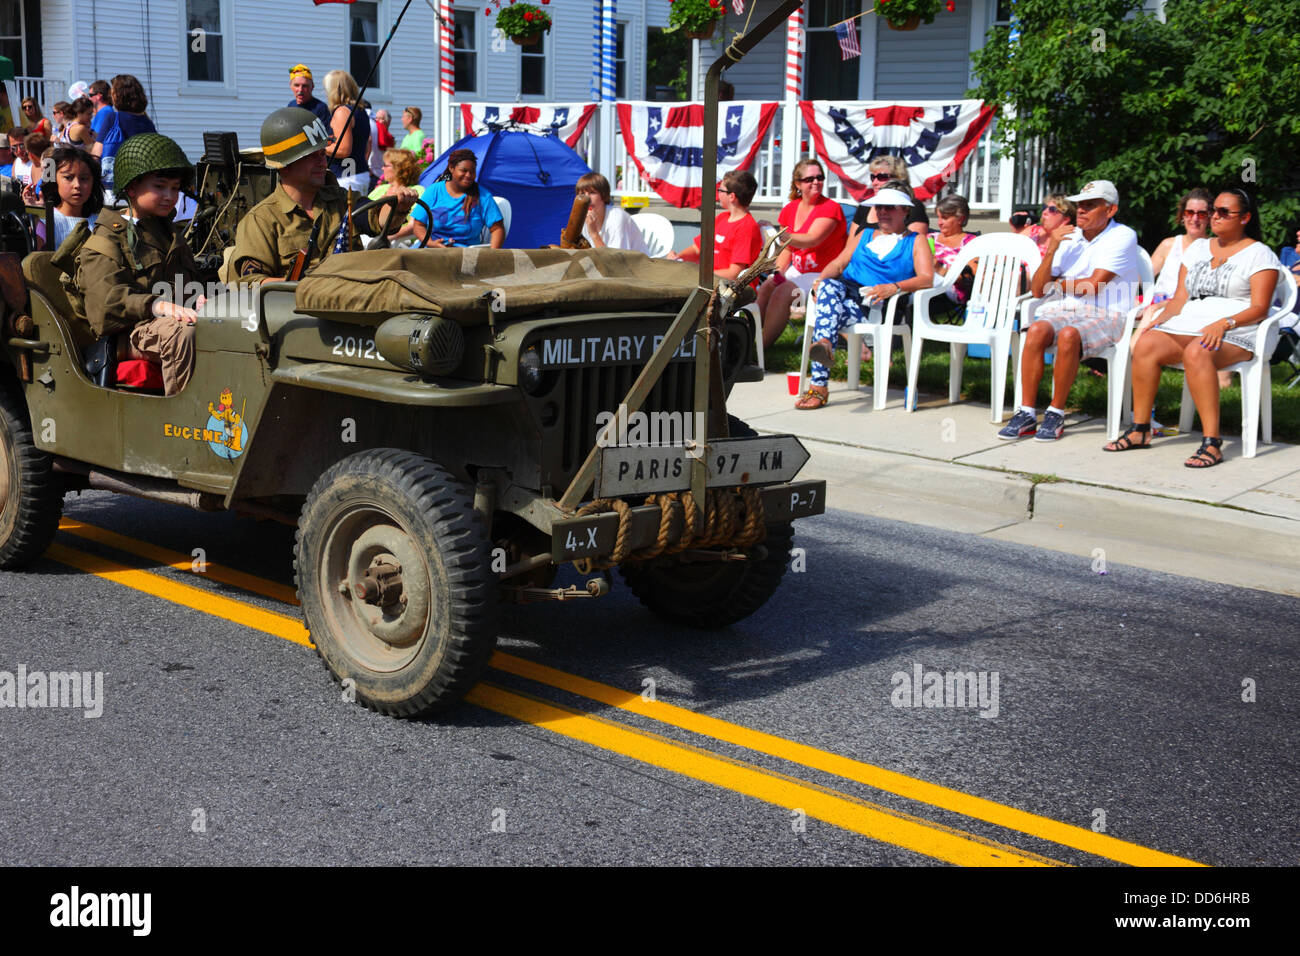 Soldat de la police militaire en jeep avec Paris 97km inscription sur l'avant, 4 juillet Jour de l'indépendance des défilés, Catonsville, Maryland, USA Banque D'Images